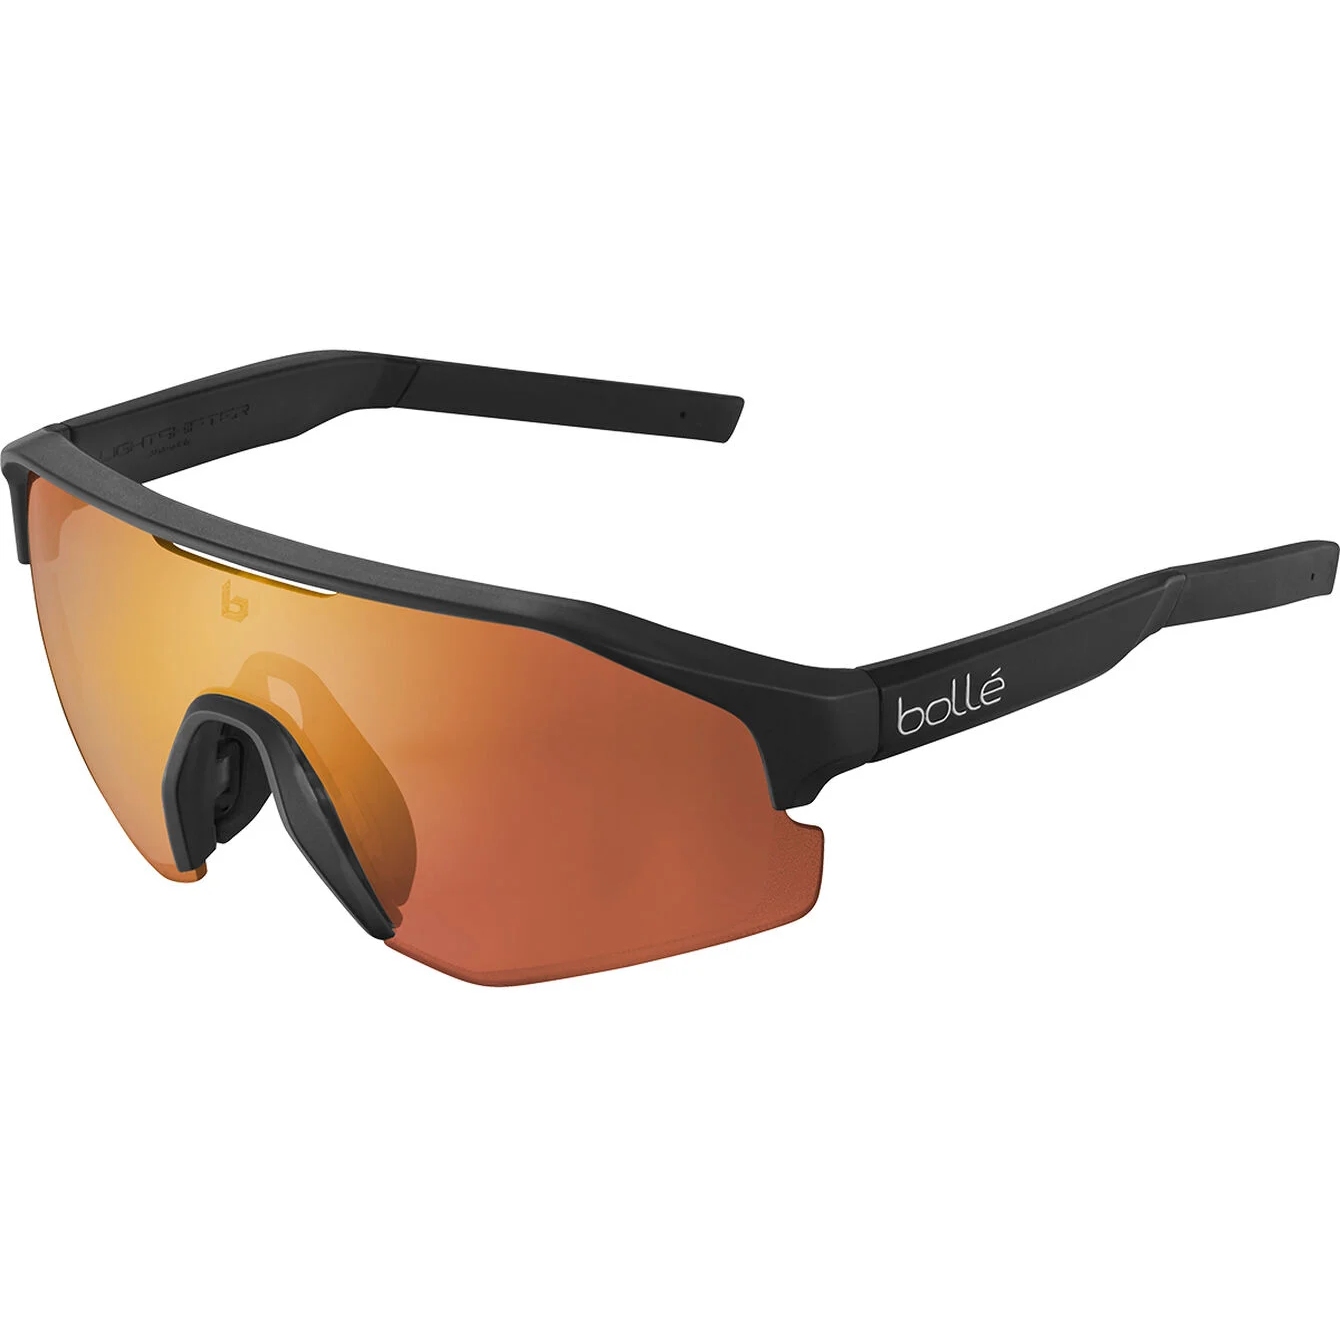 Image of Bollé Lightshifter Sunglasses - Matte Black - Phantom Brown Red